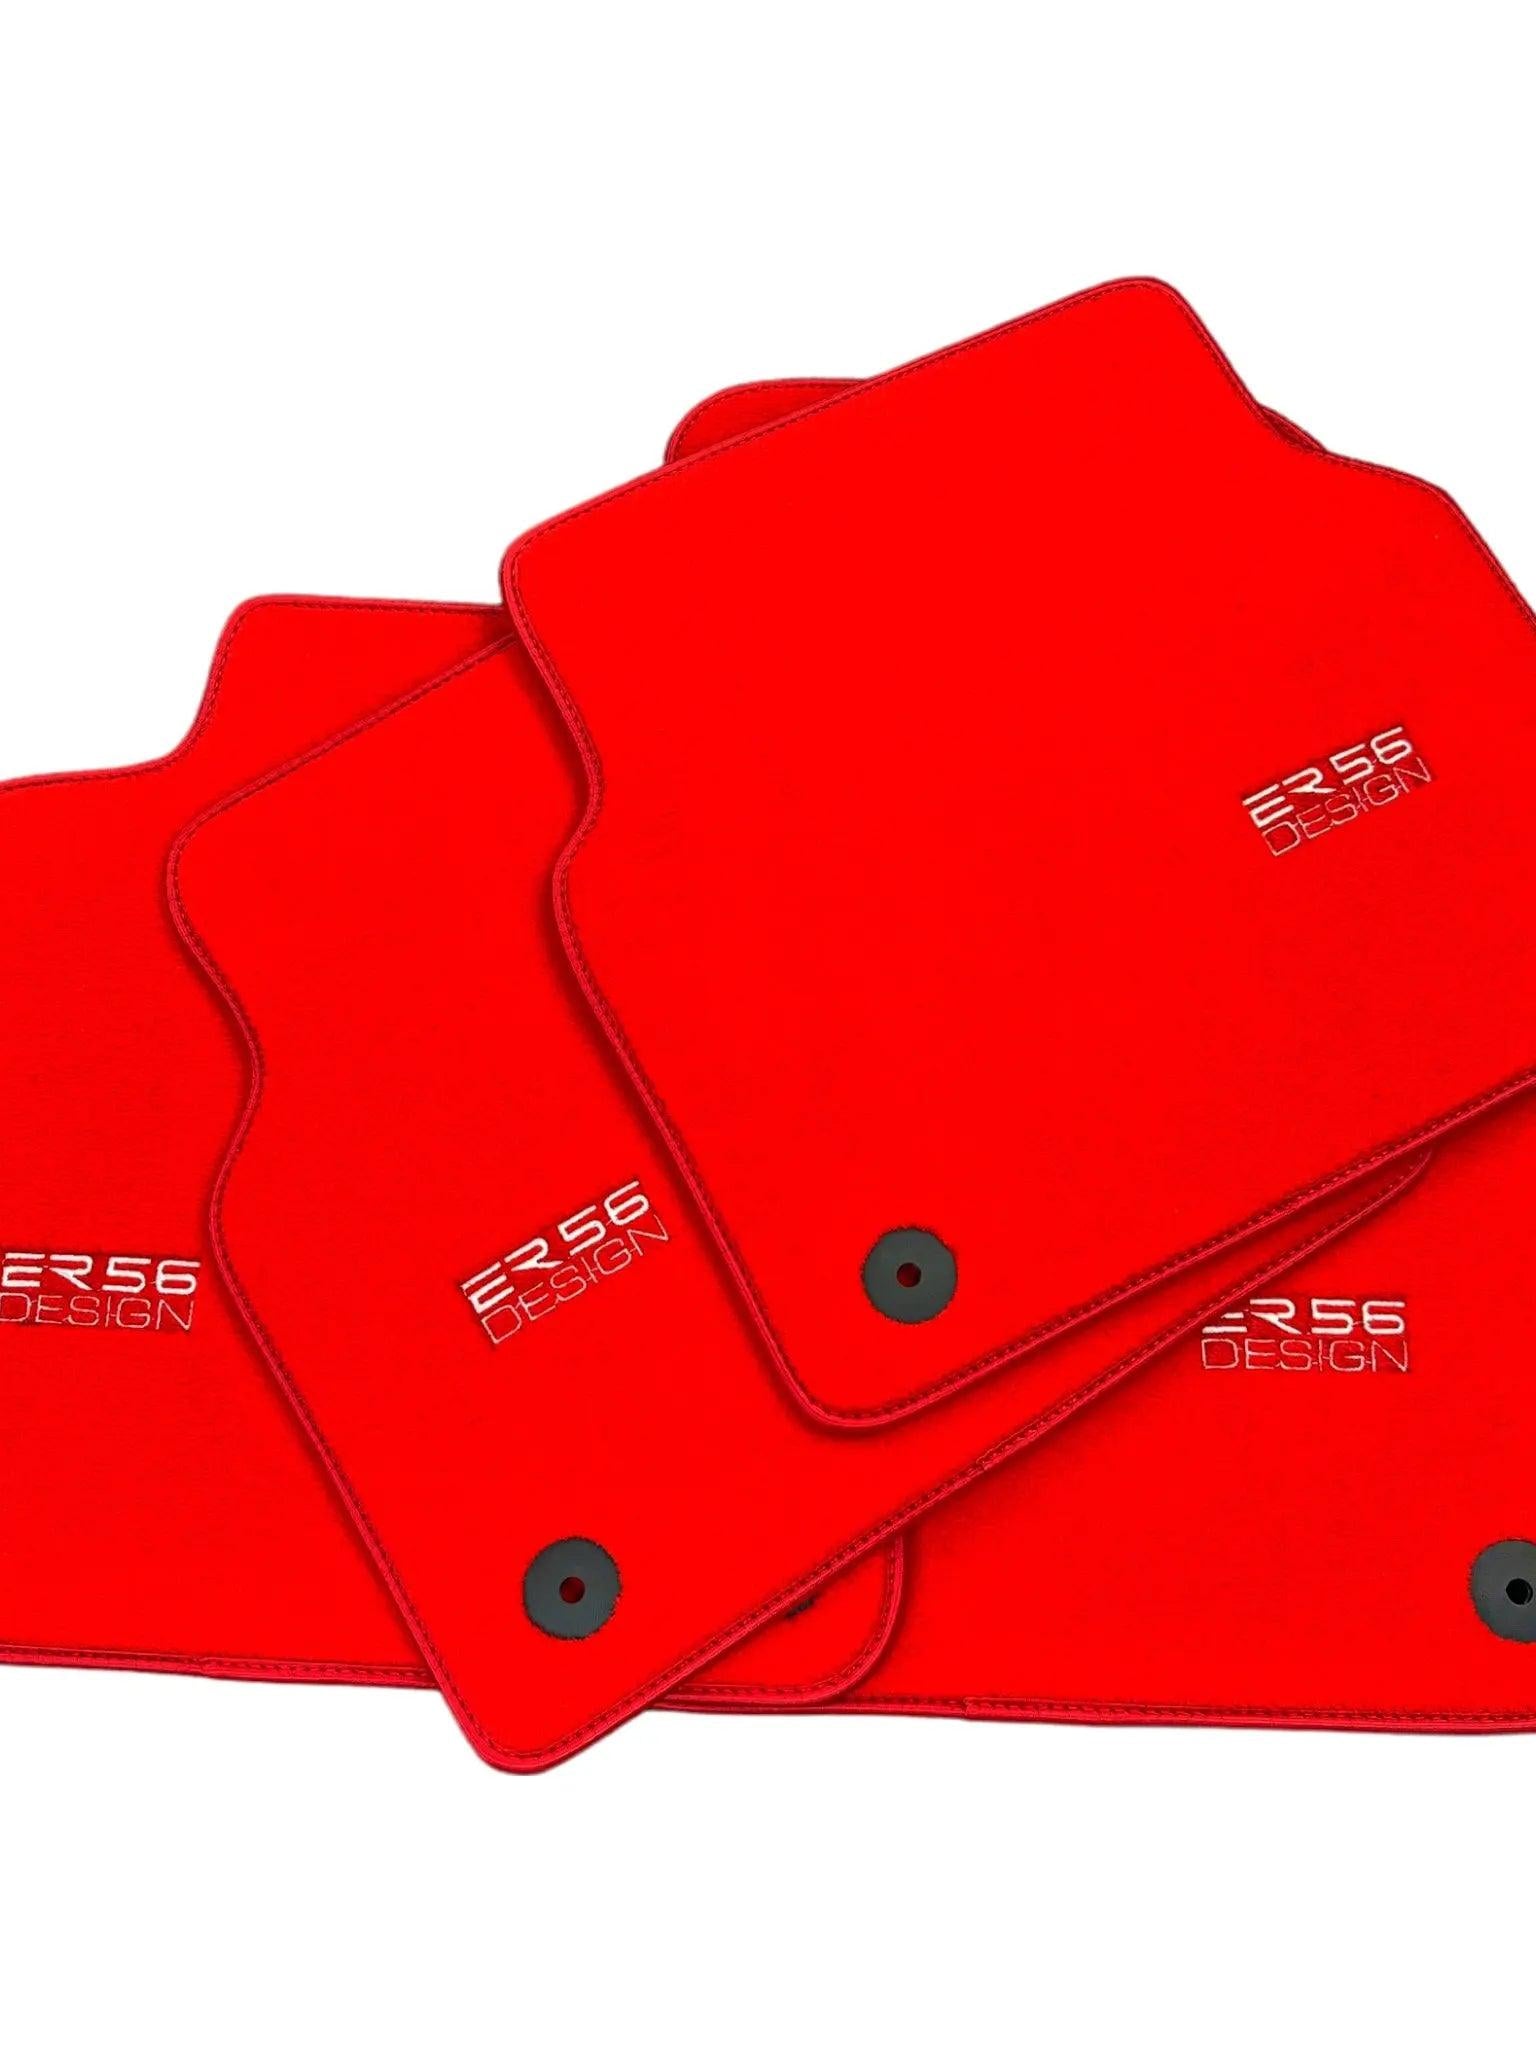 Red Floor Mats for Audi A6 - C8 Sedan (2018-2023) | ER56 Design